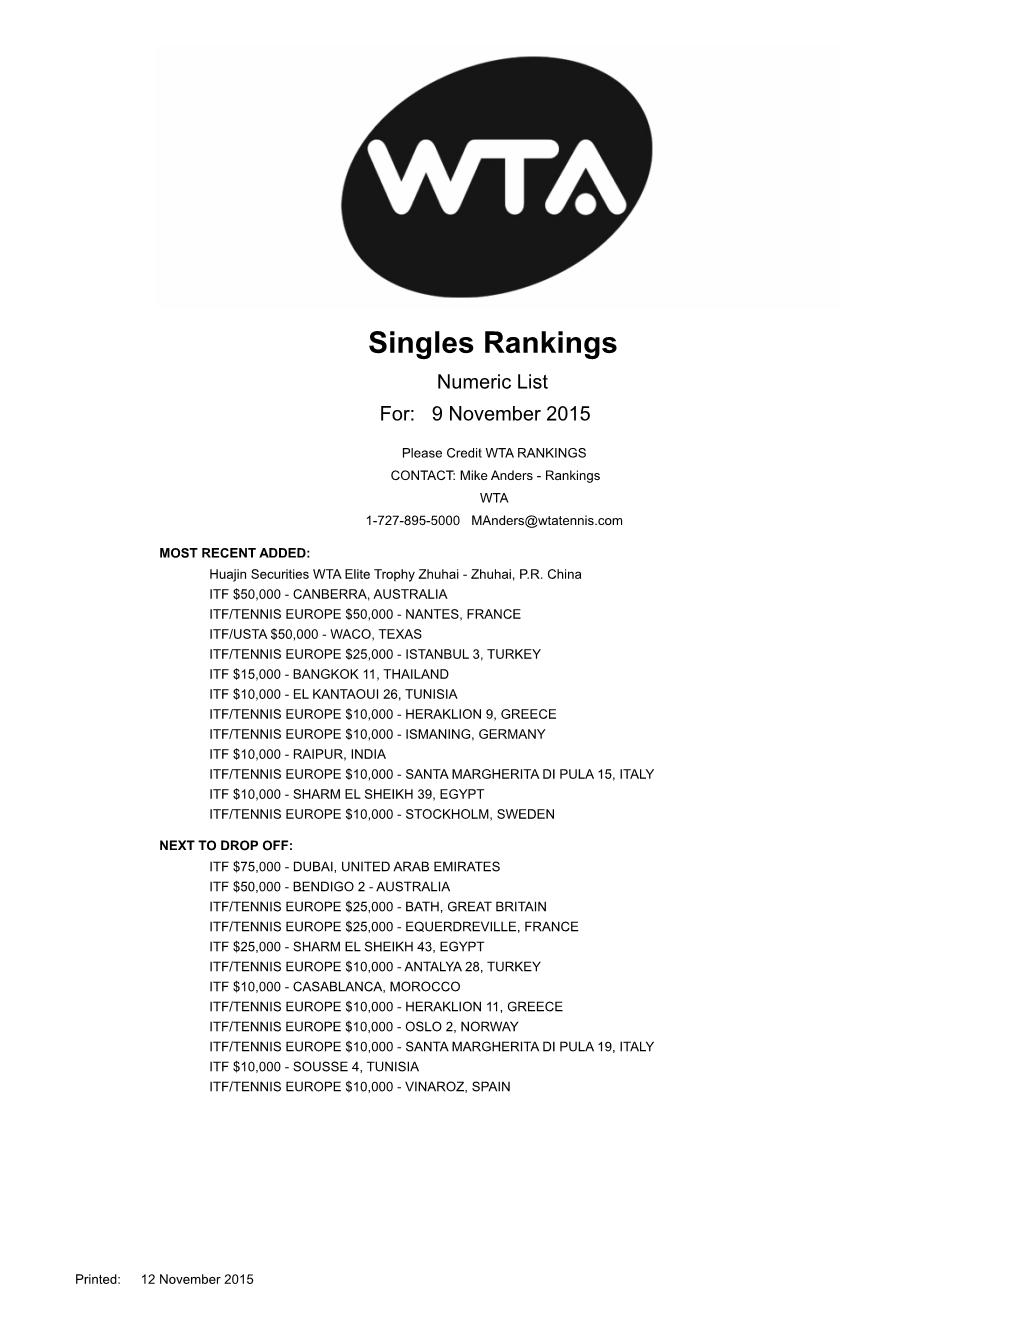 WTA-SINGLES-RANKINGS-2015.Pdf